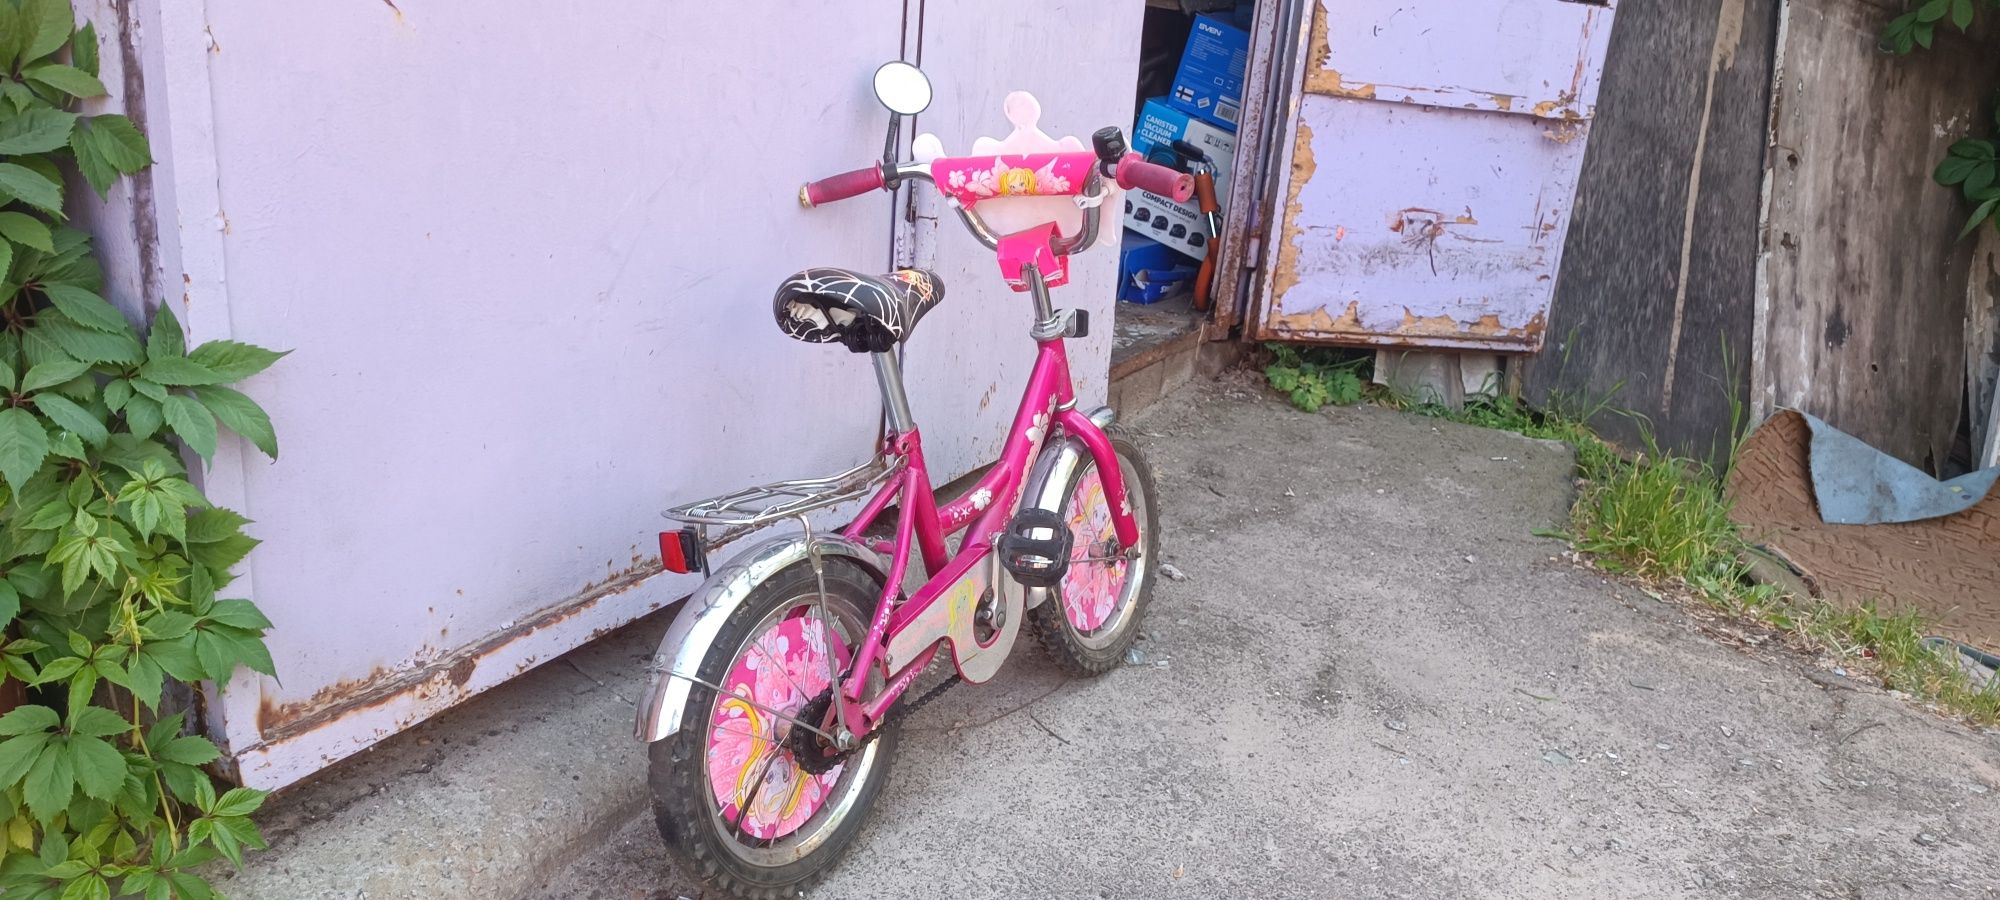 Продам детский велосипед, колеса R14